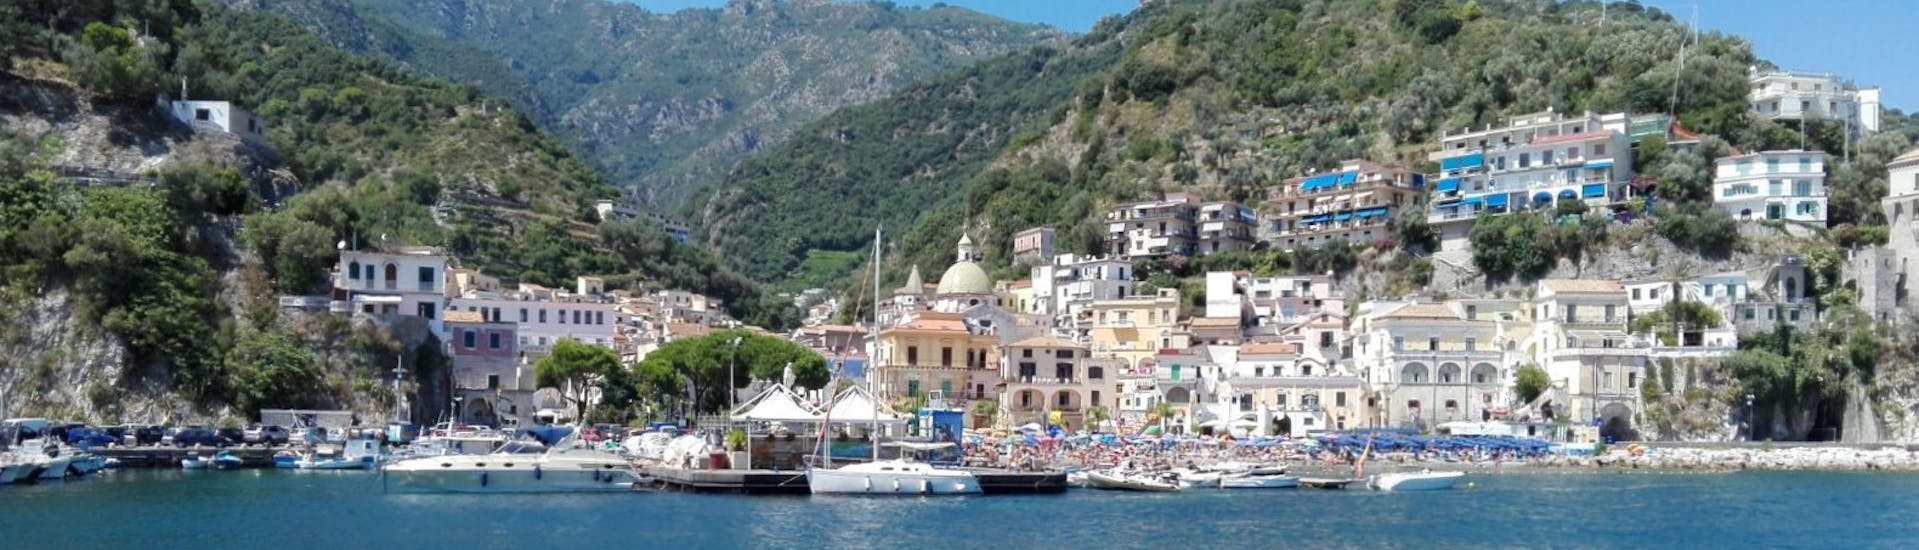 Die sorrentinische Küste vom Boot aus gesehen während der privaten Bootstour von Sorrent nach Amalfi mit Aperitif und Schnorcheln.